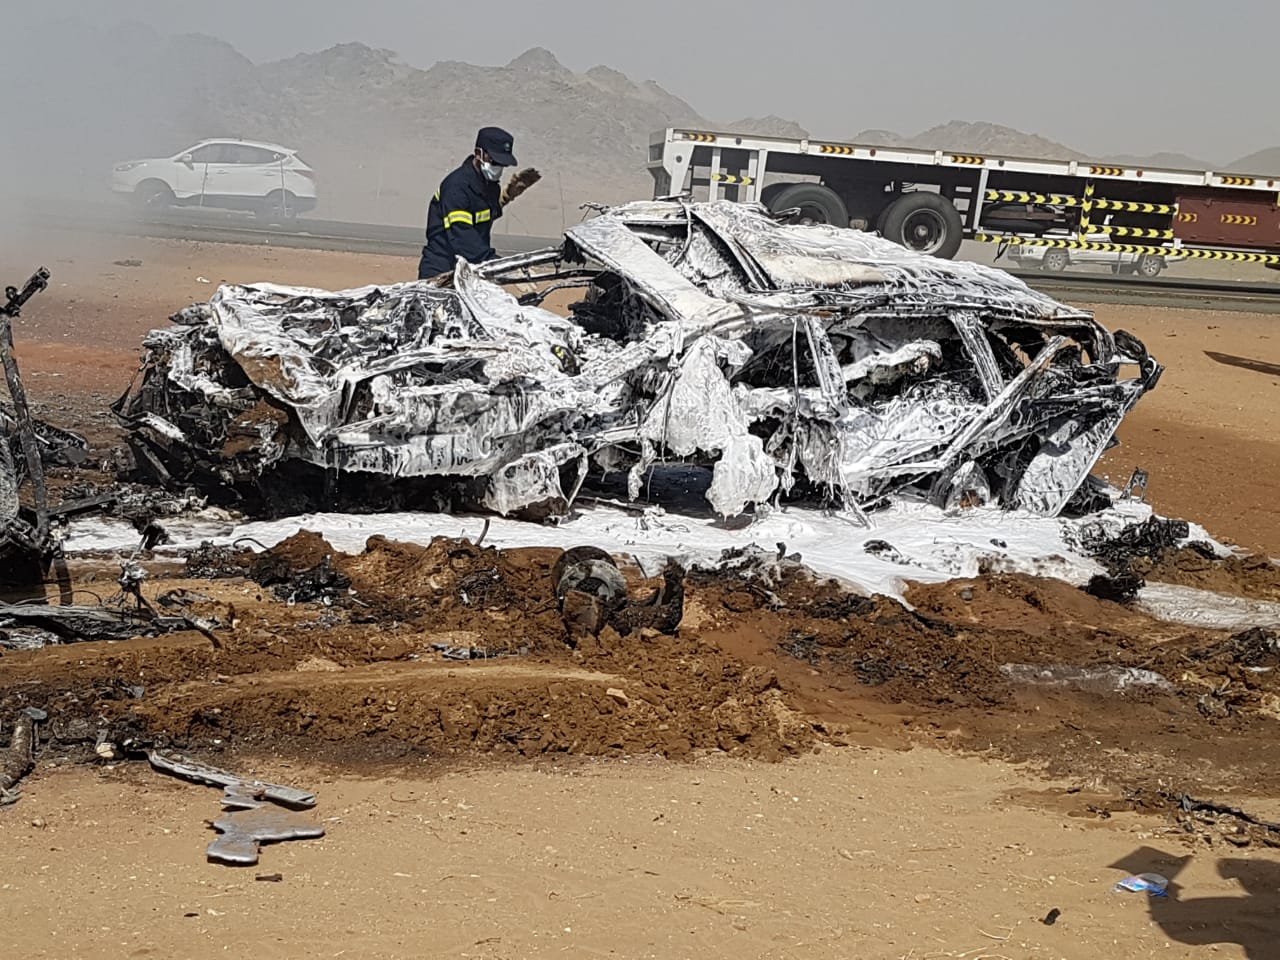 بالصور حادث مروّع.. تفحم 8 أشخاص في تصادم مركبة عائلية وحافلة على طريق مكة السريع